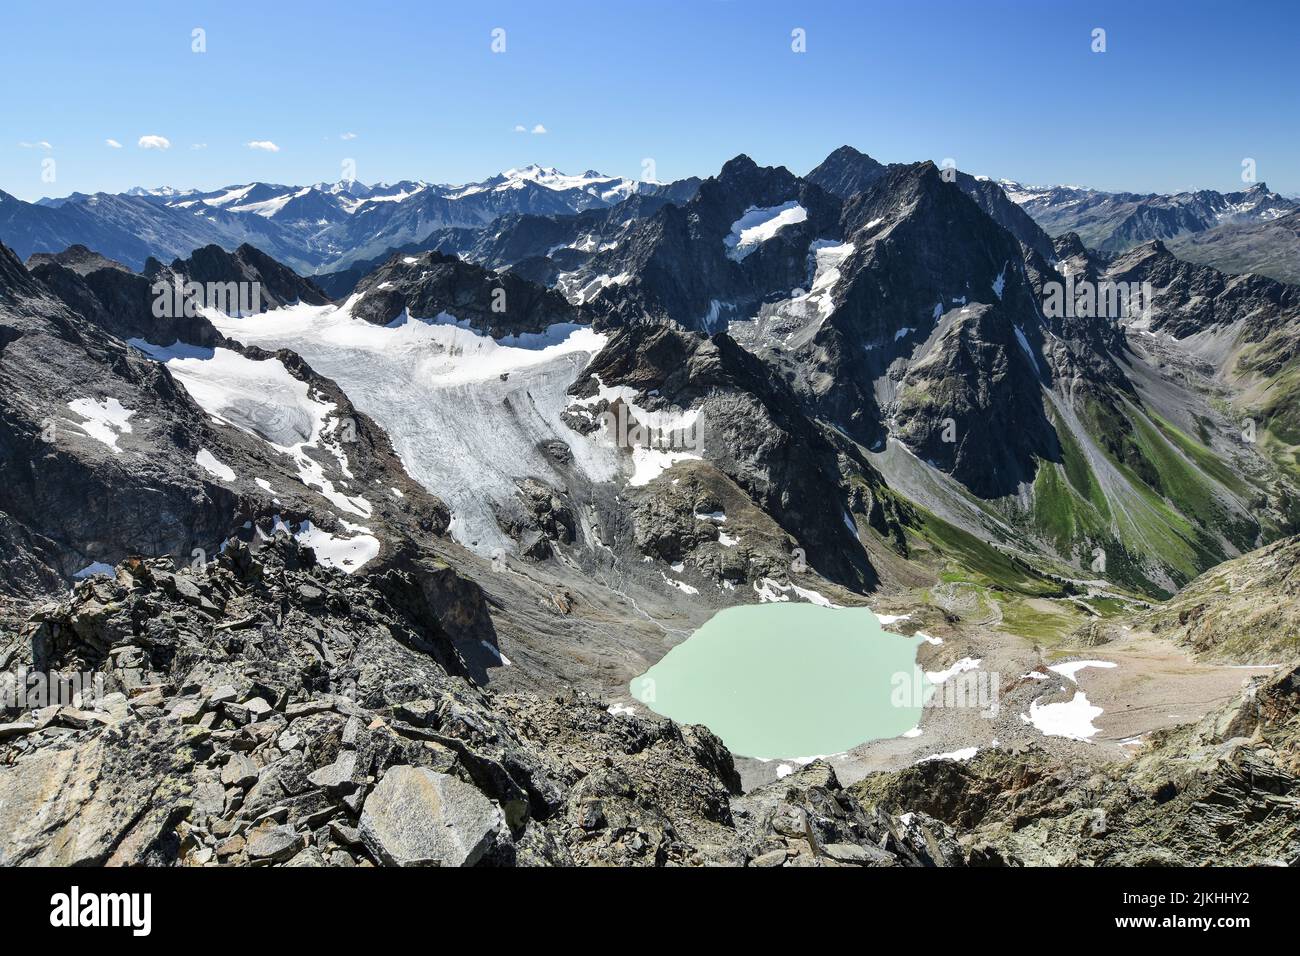 Cambiamenti climatici nelle Alpi di Ötztal: Lago d'acqua sciolta e ghiacciaio in contrazione nelle calde giornate estive. Schweikertferner, Tirolo, Austria, Europa Foto Stock